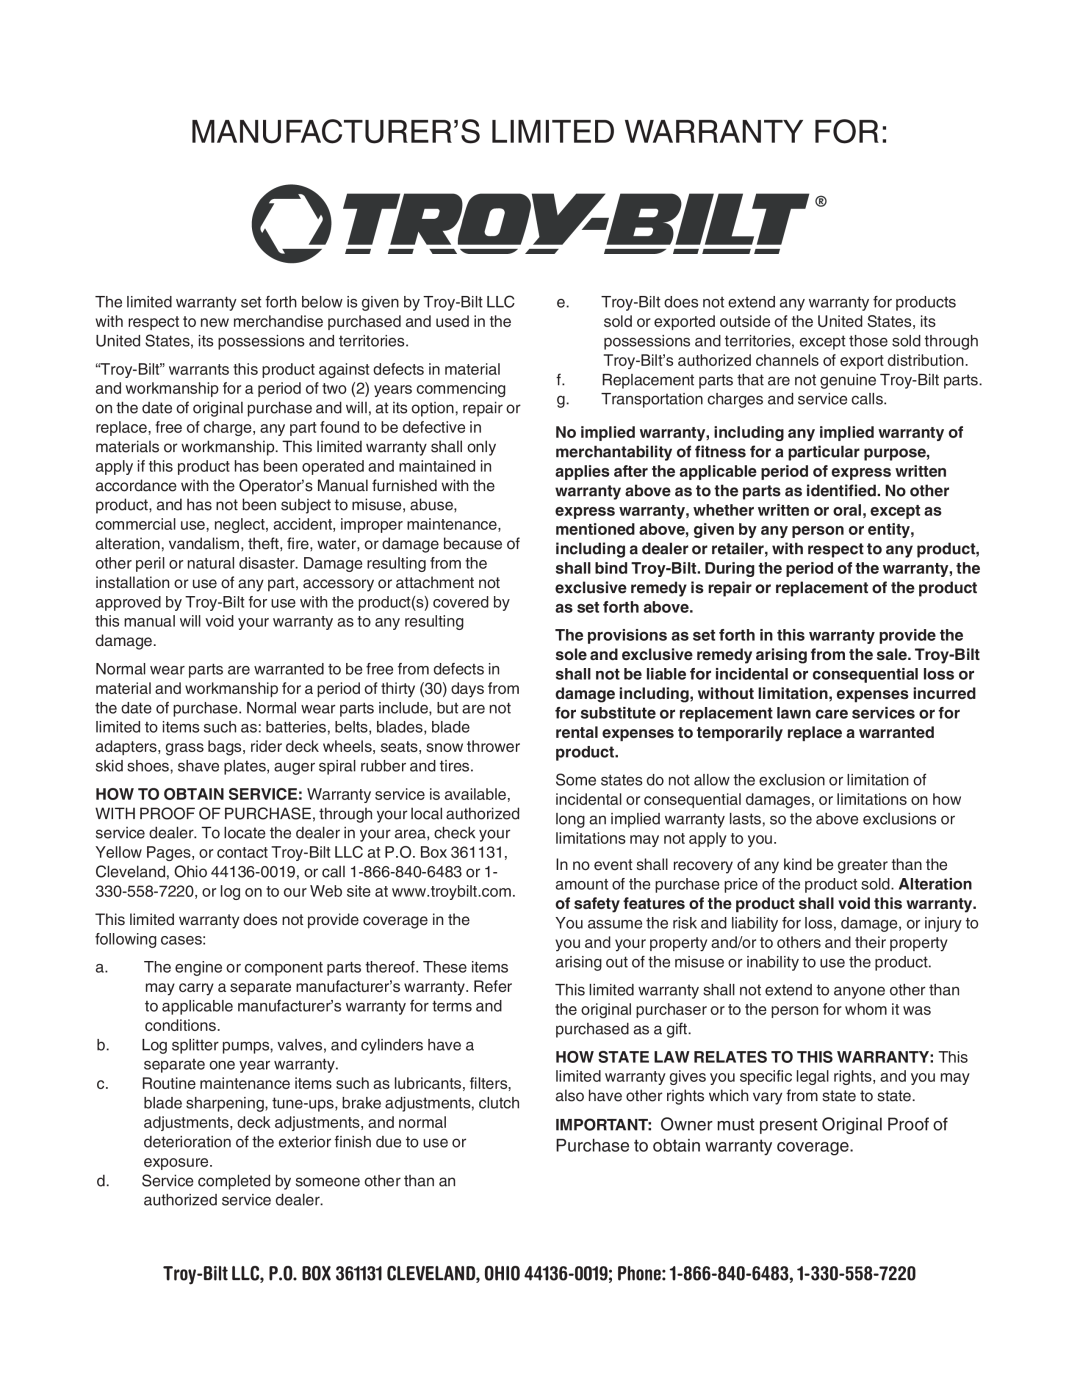 Troy-Bilt RZT 50 manual Manufacturer’S Limited Warranty For 